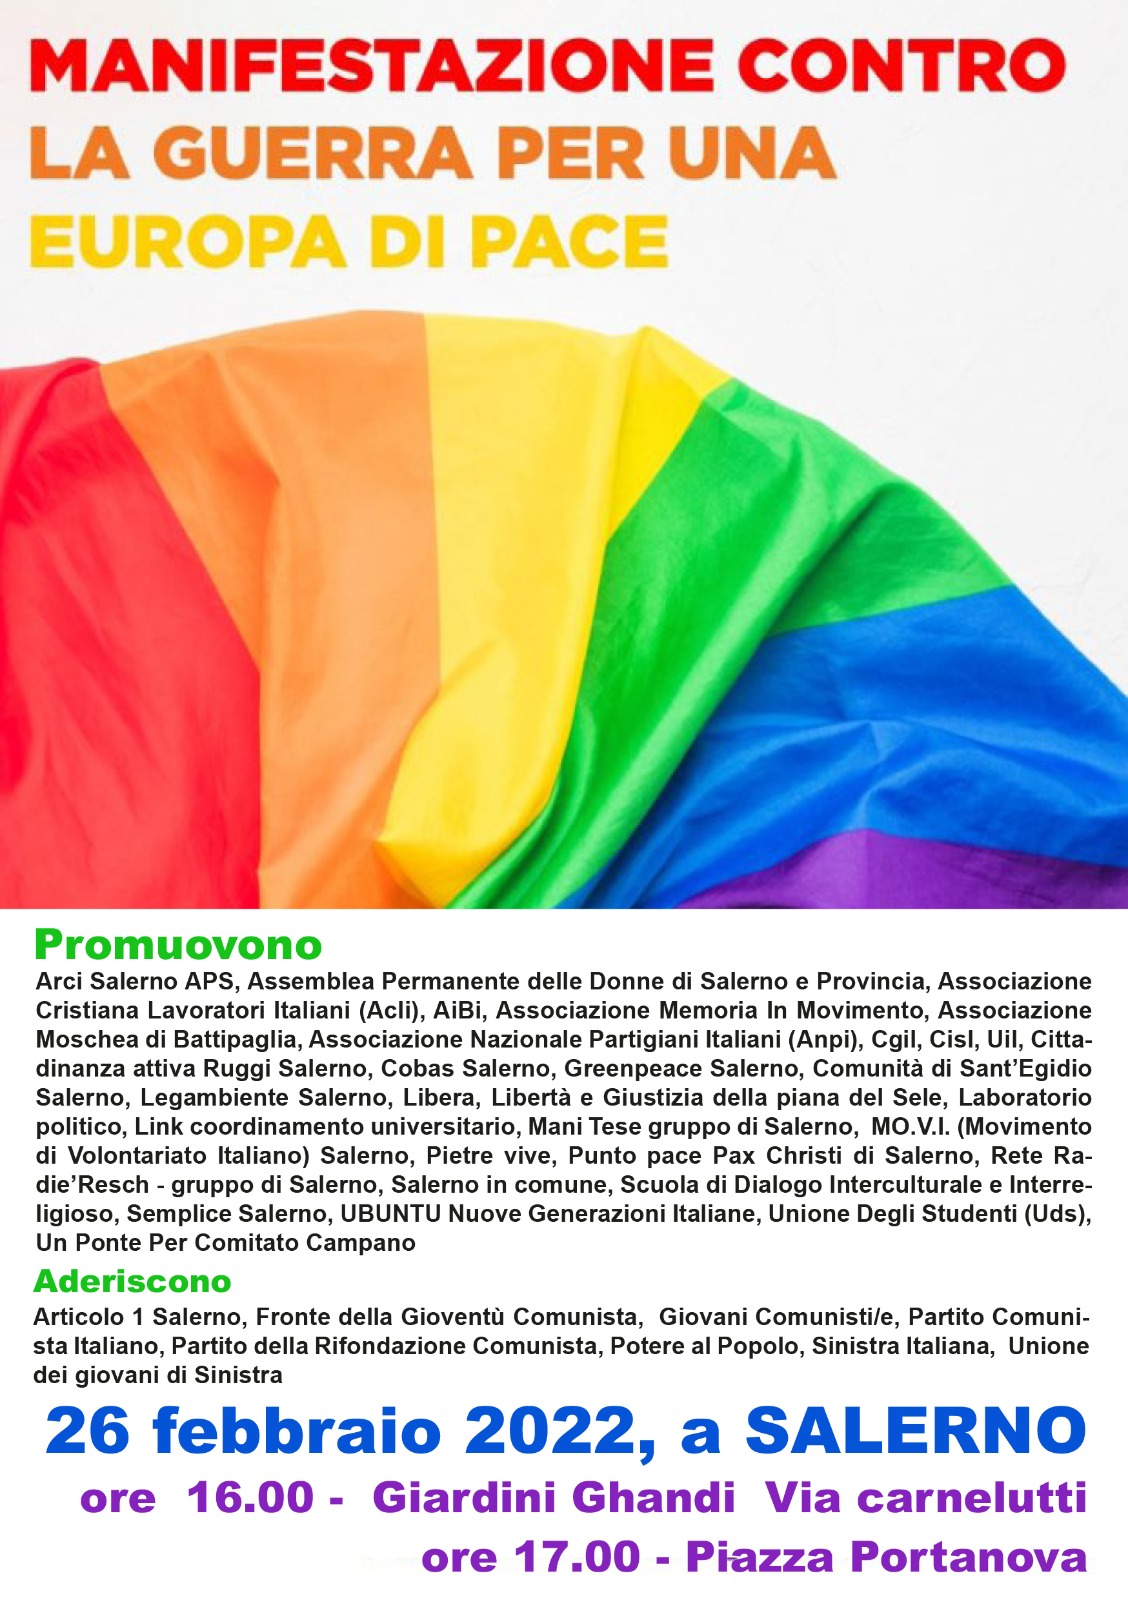 Salerno: No alla guerra, Sì alla pace, presidio in Piazza Portanova